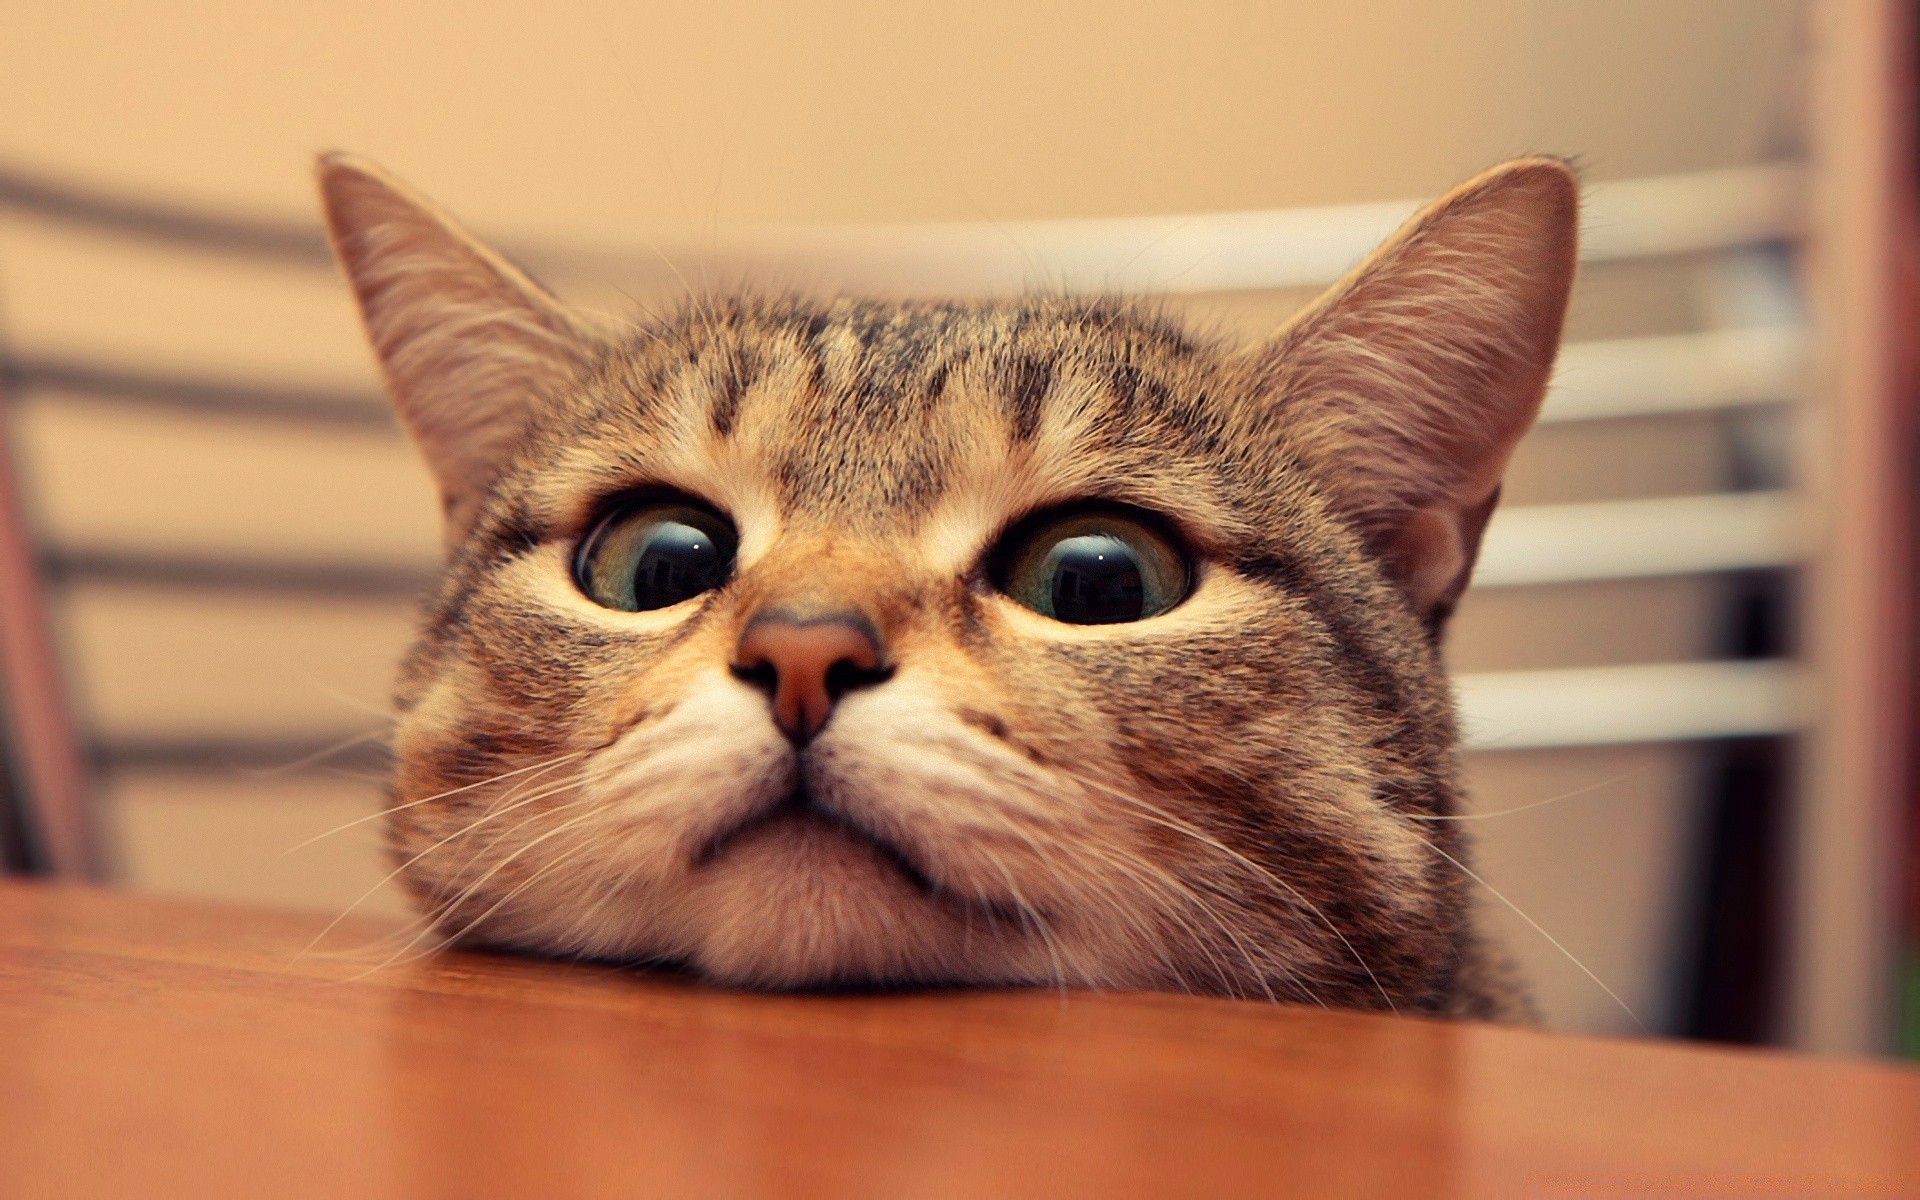 кошки кошка пэт портрет млекопитающее животное котенок милые глаз отечественные мех очаровательны пушистый студия ребенок ус нос любопытно молодой табби